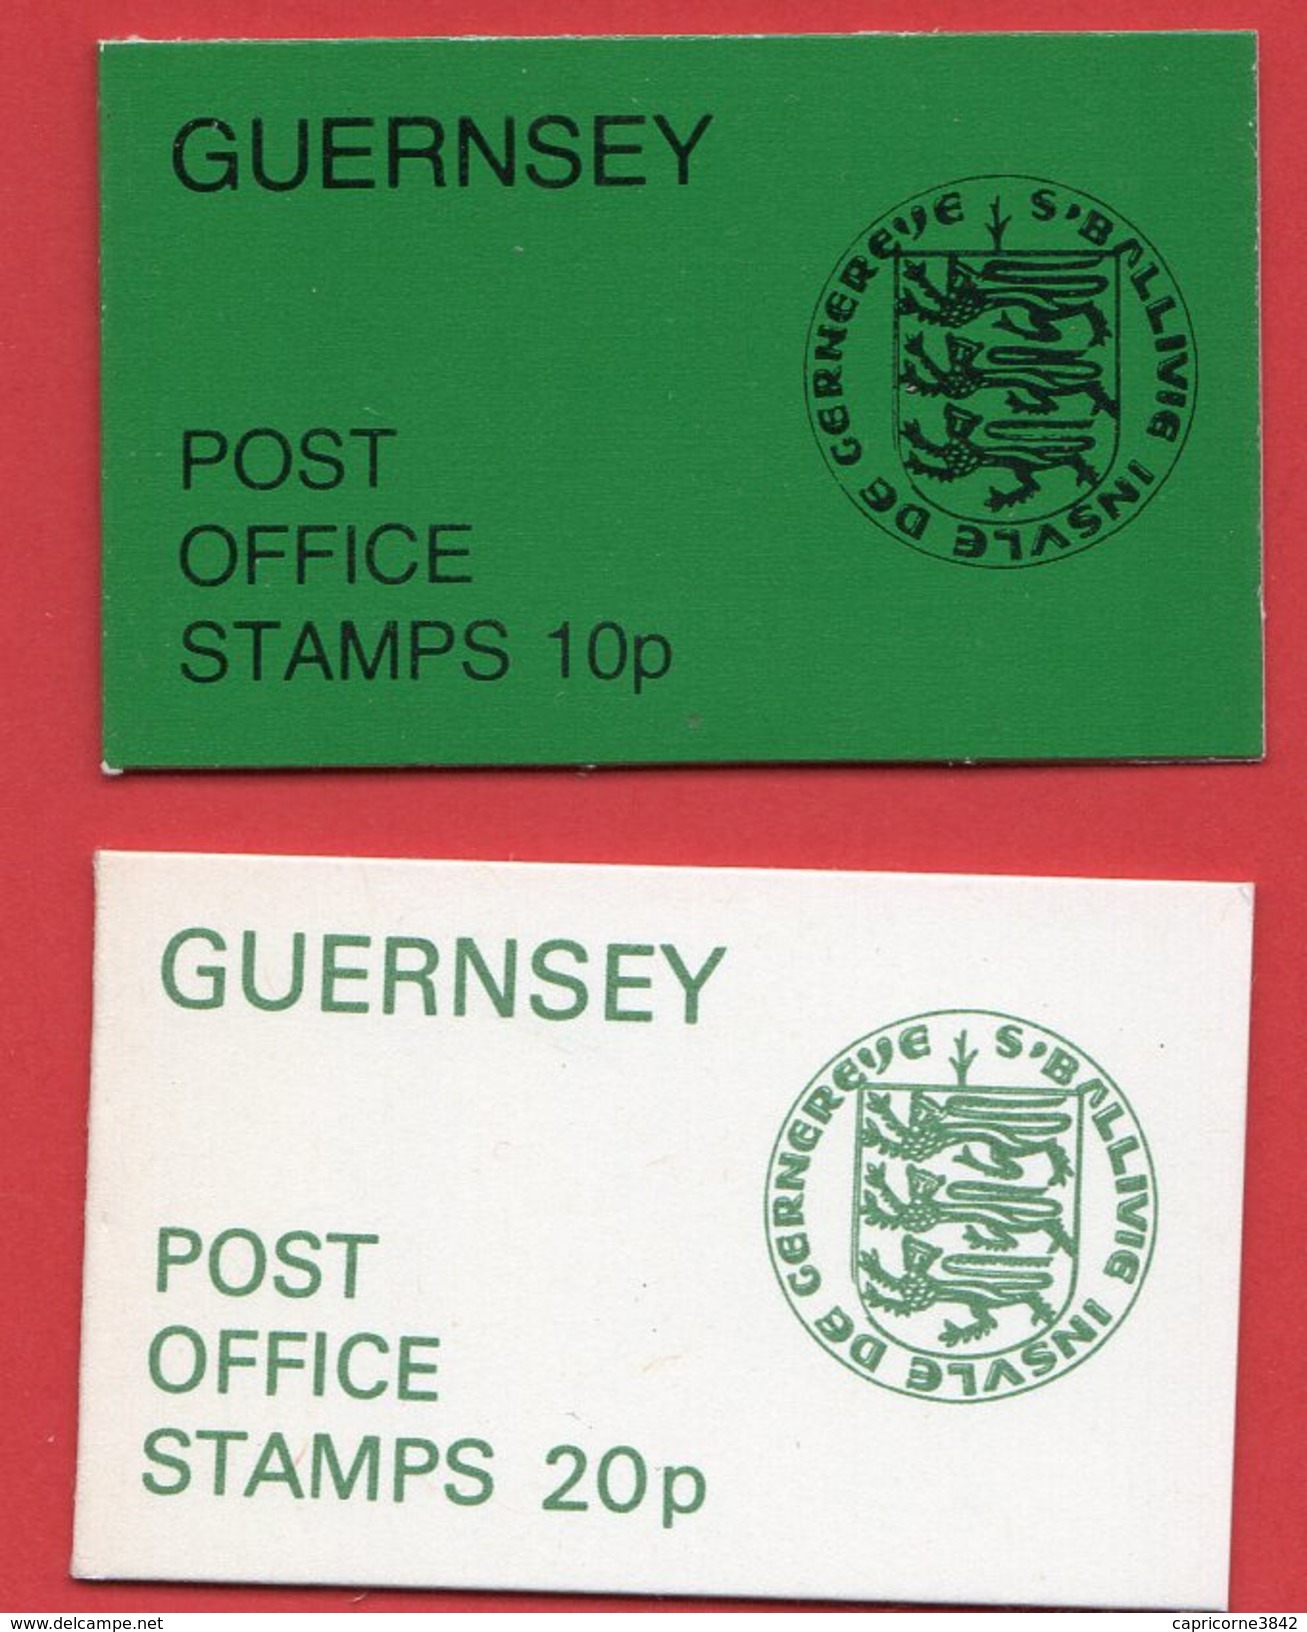 Guernesey - 2 Carnets - 1979: Pièces De Monnaies Et 1976: Uniformes Militaires - Guernsey